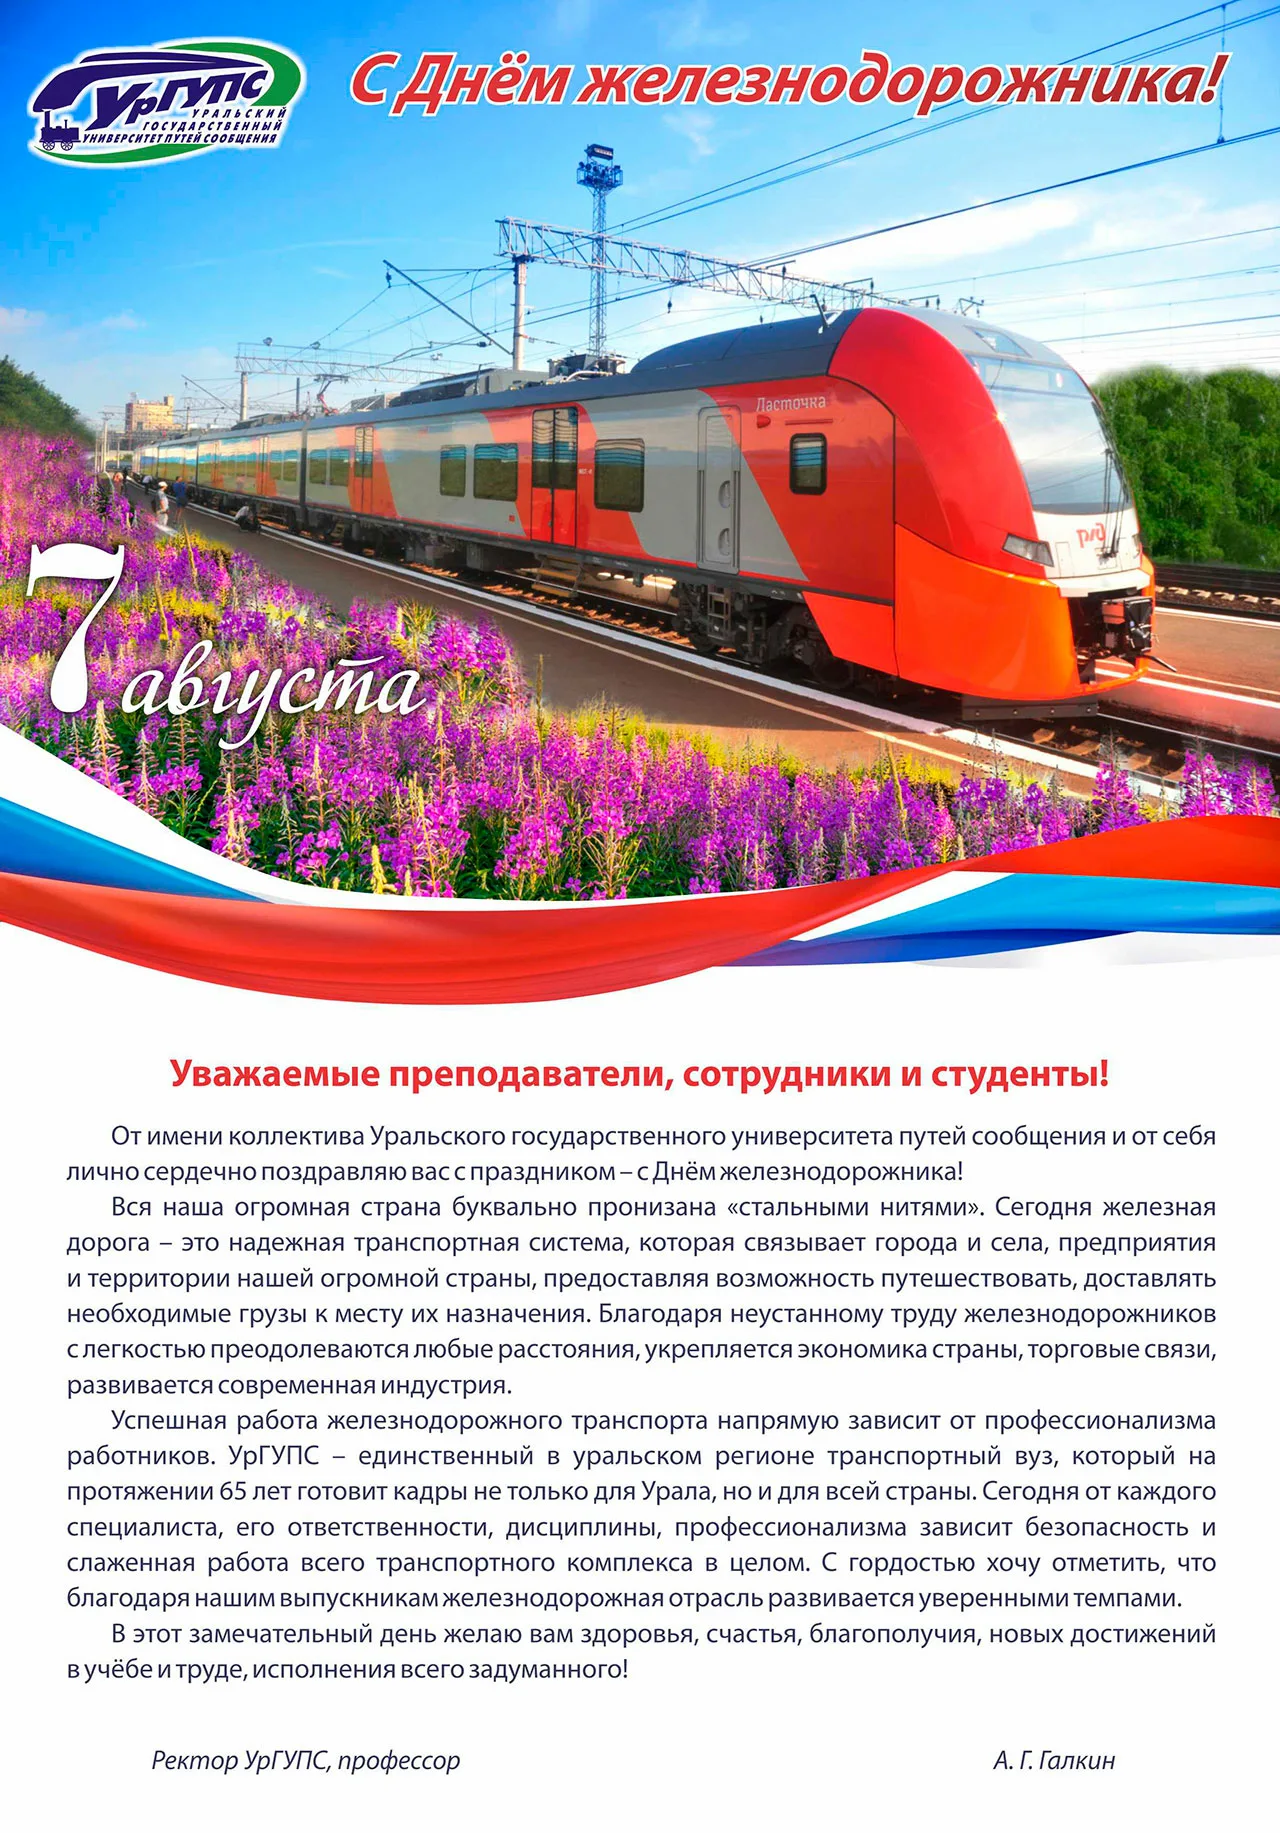 Фото Поздравление с днем железнодорожника Украины #64